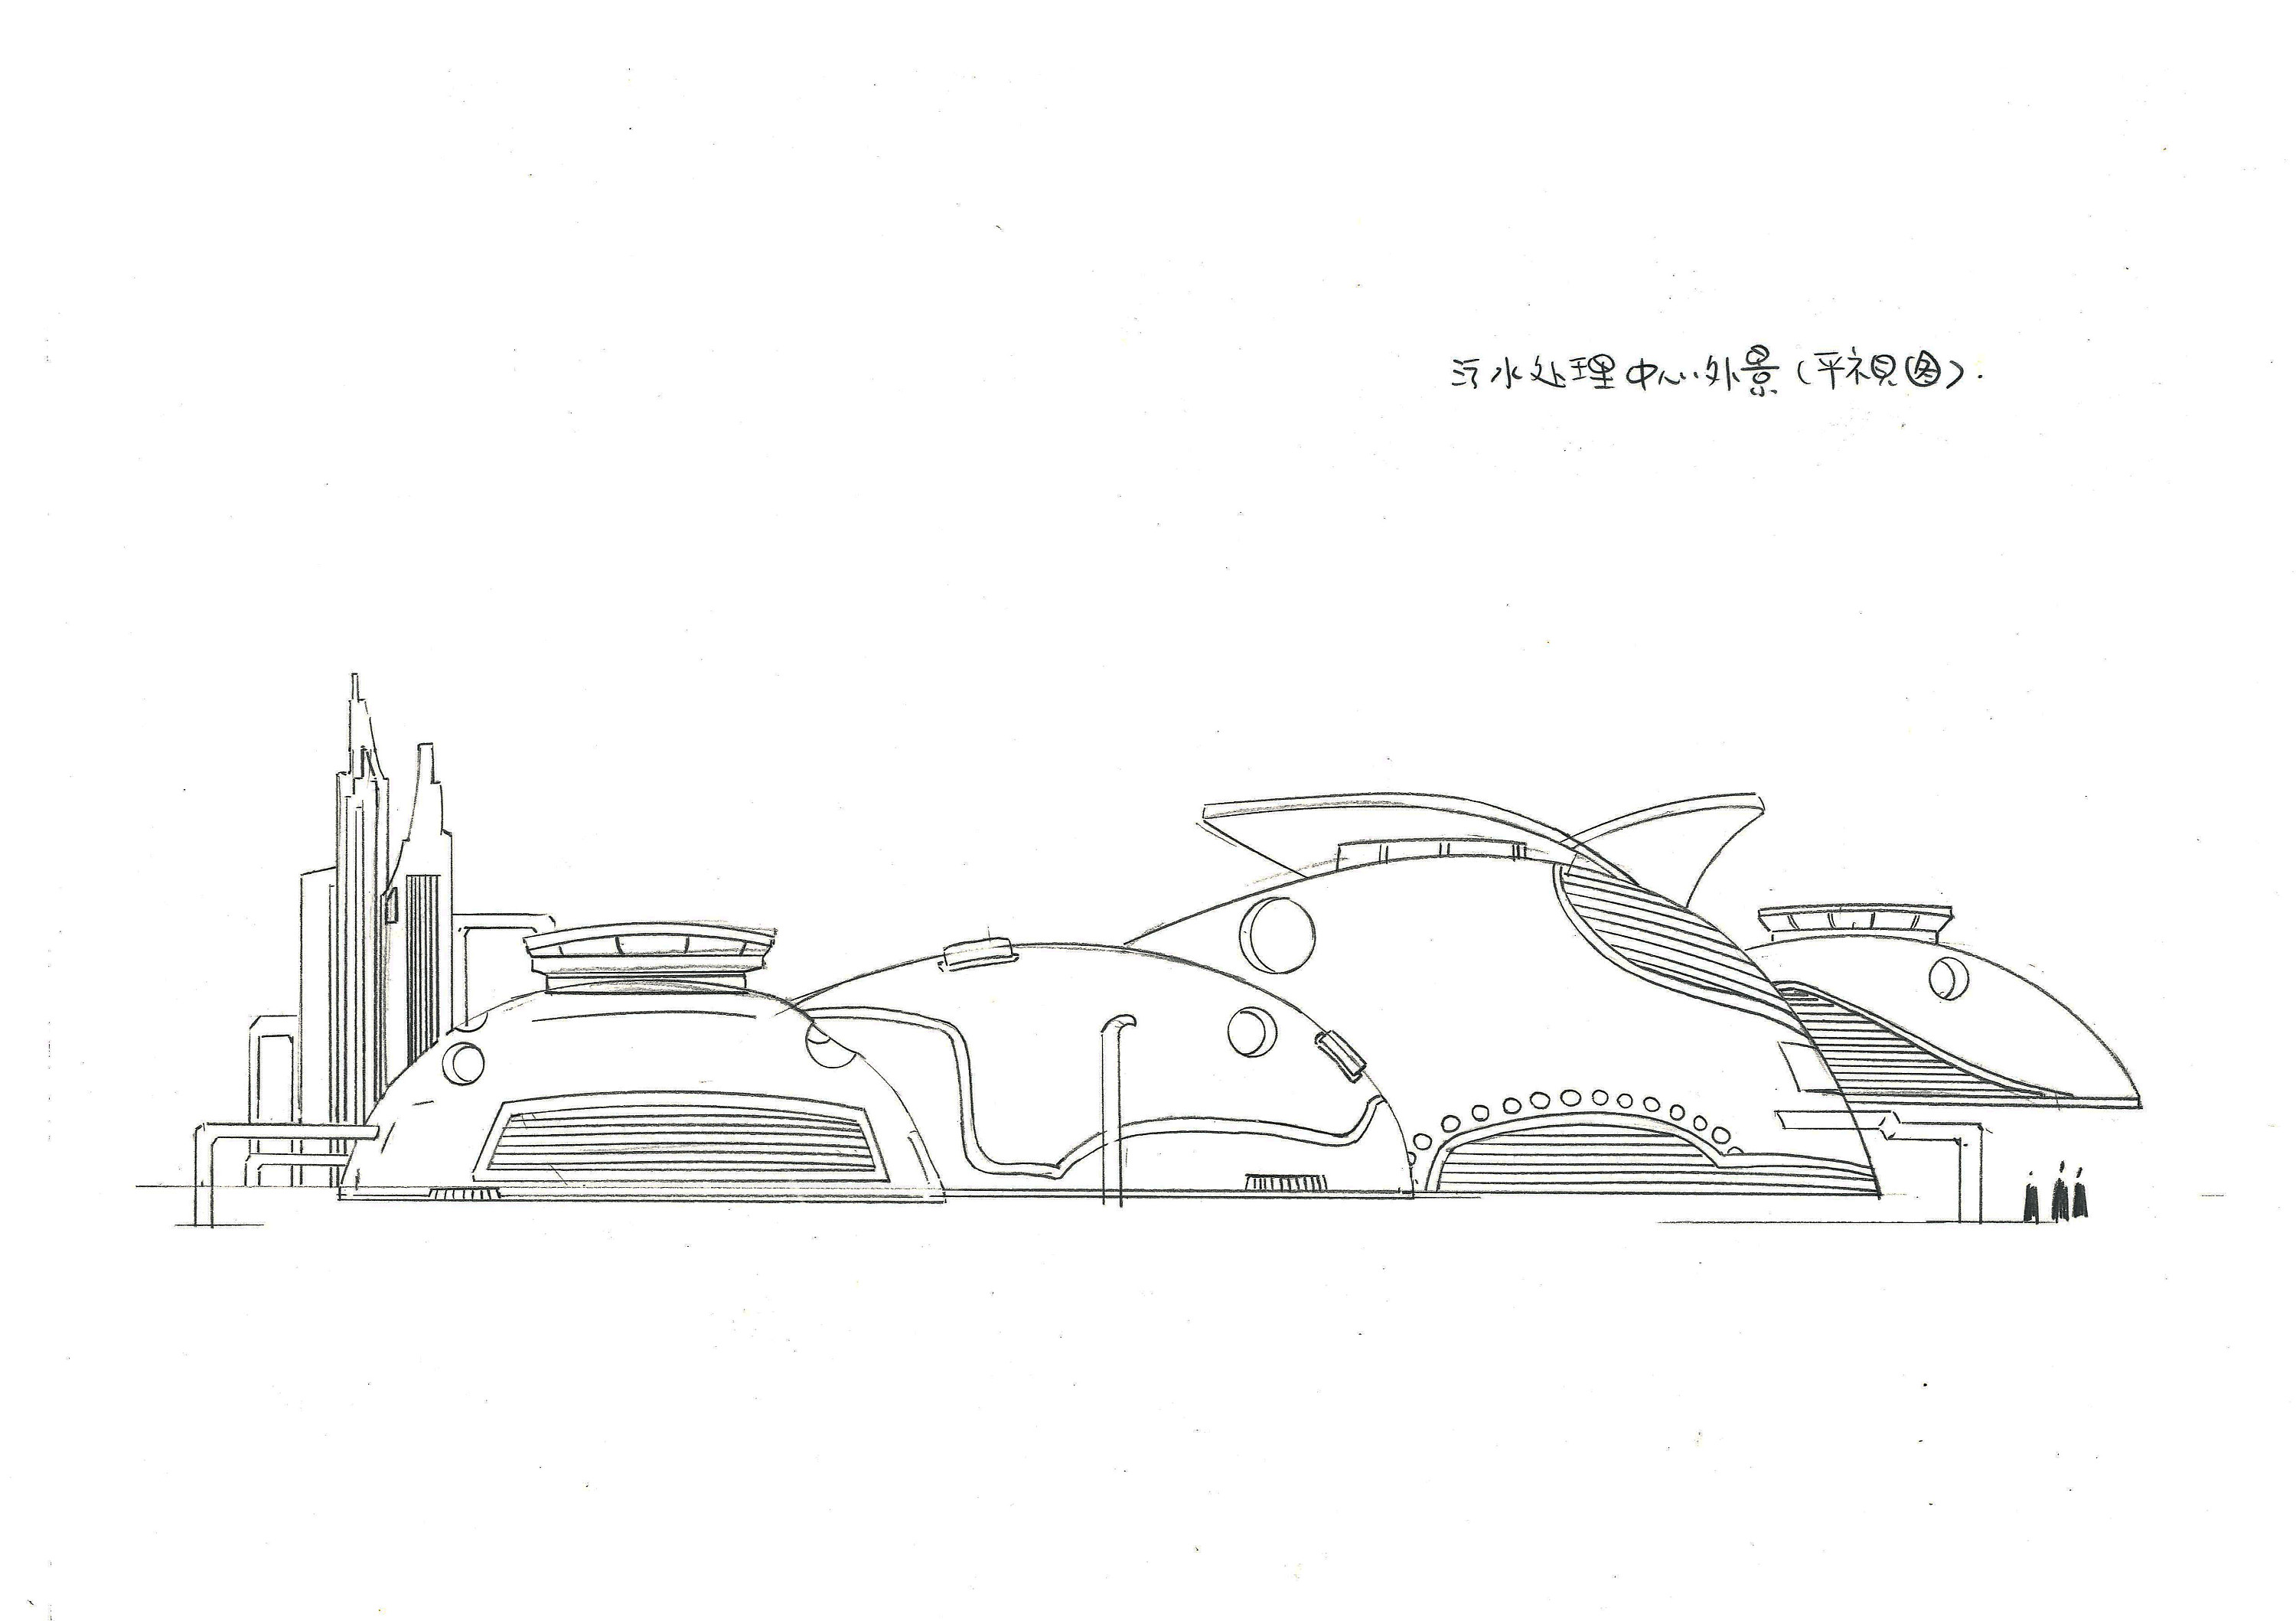 《江苏常州中天钢铁——动画场景》部分稿子